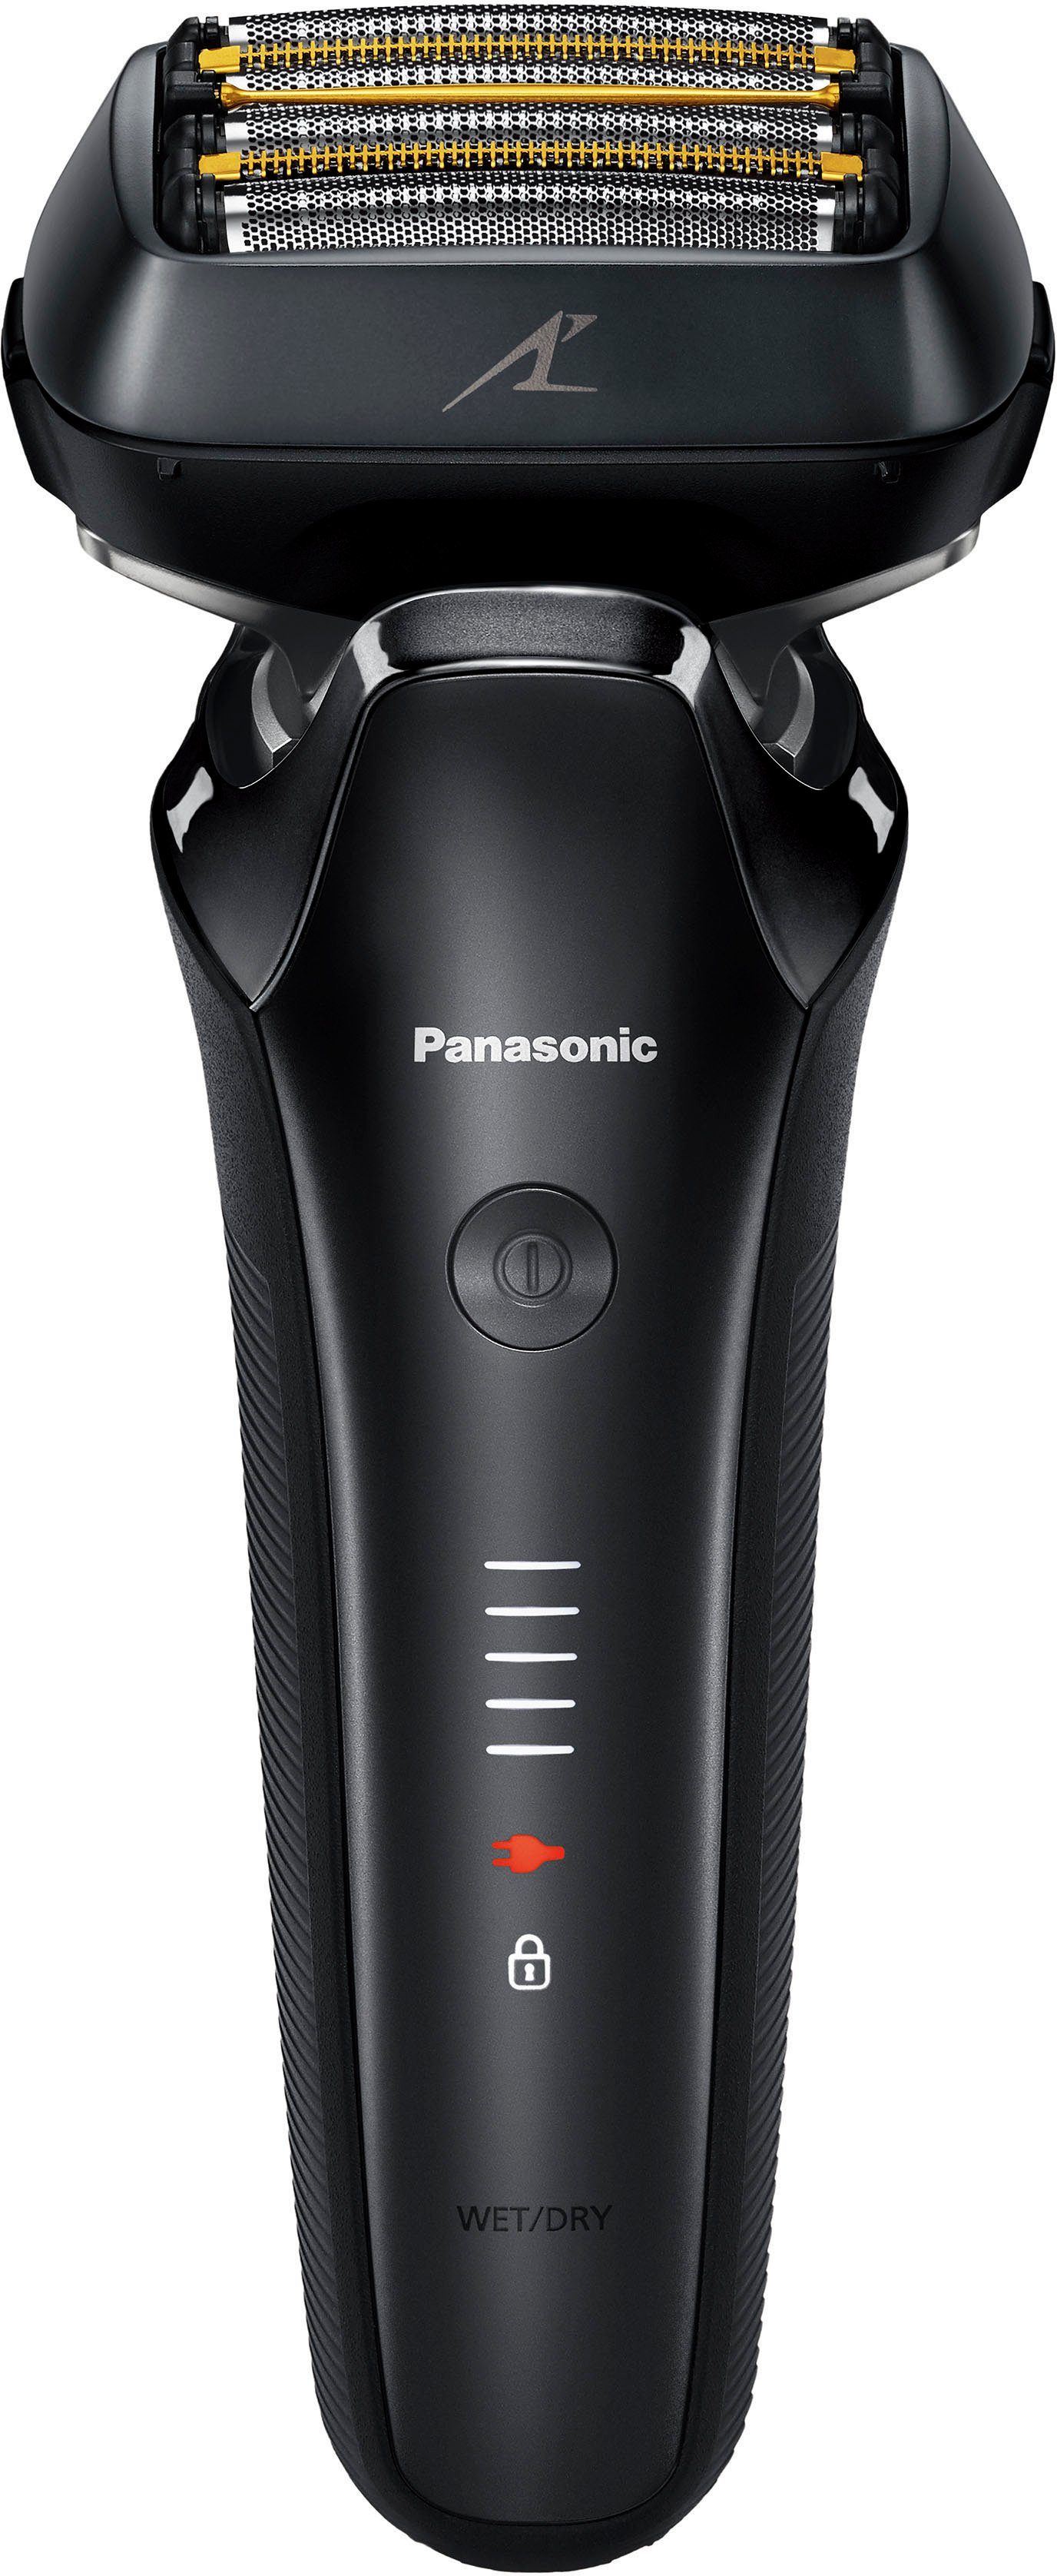 Elektrorasierer Panasonic Series 900+ Premium Langhaartrimmer ES-LS6A-K803, Rasierer